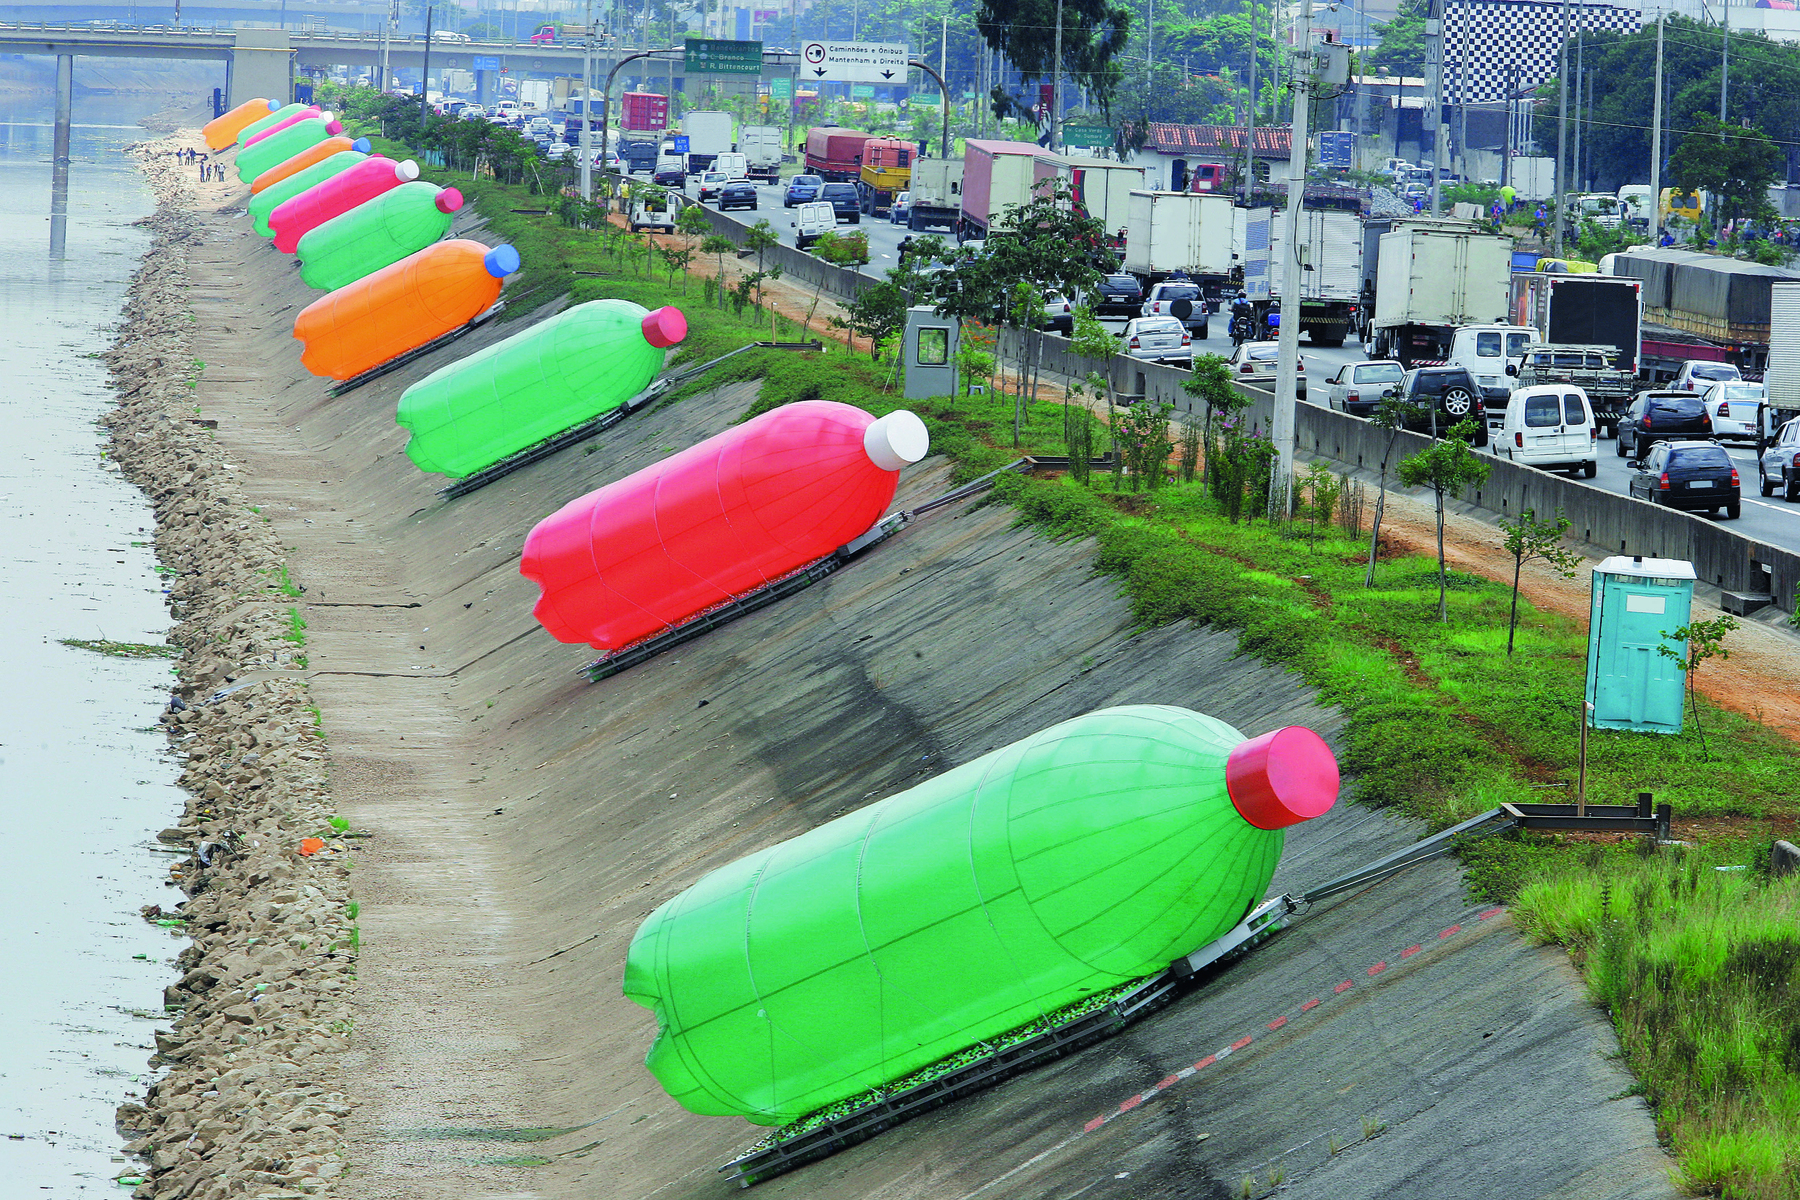 Fotografia. Intervenção artística localizada à beira de um rio de cidade grande com esculturas gigantes coloridas com o formato de garrafas pet. Ao lado, trânsito intenso de carros em uma via expressa.